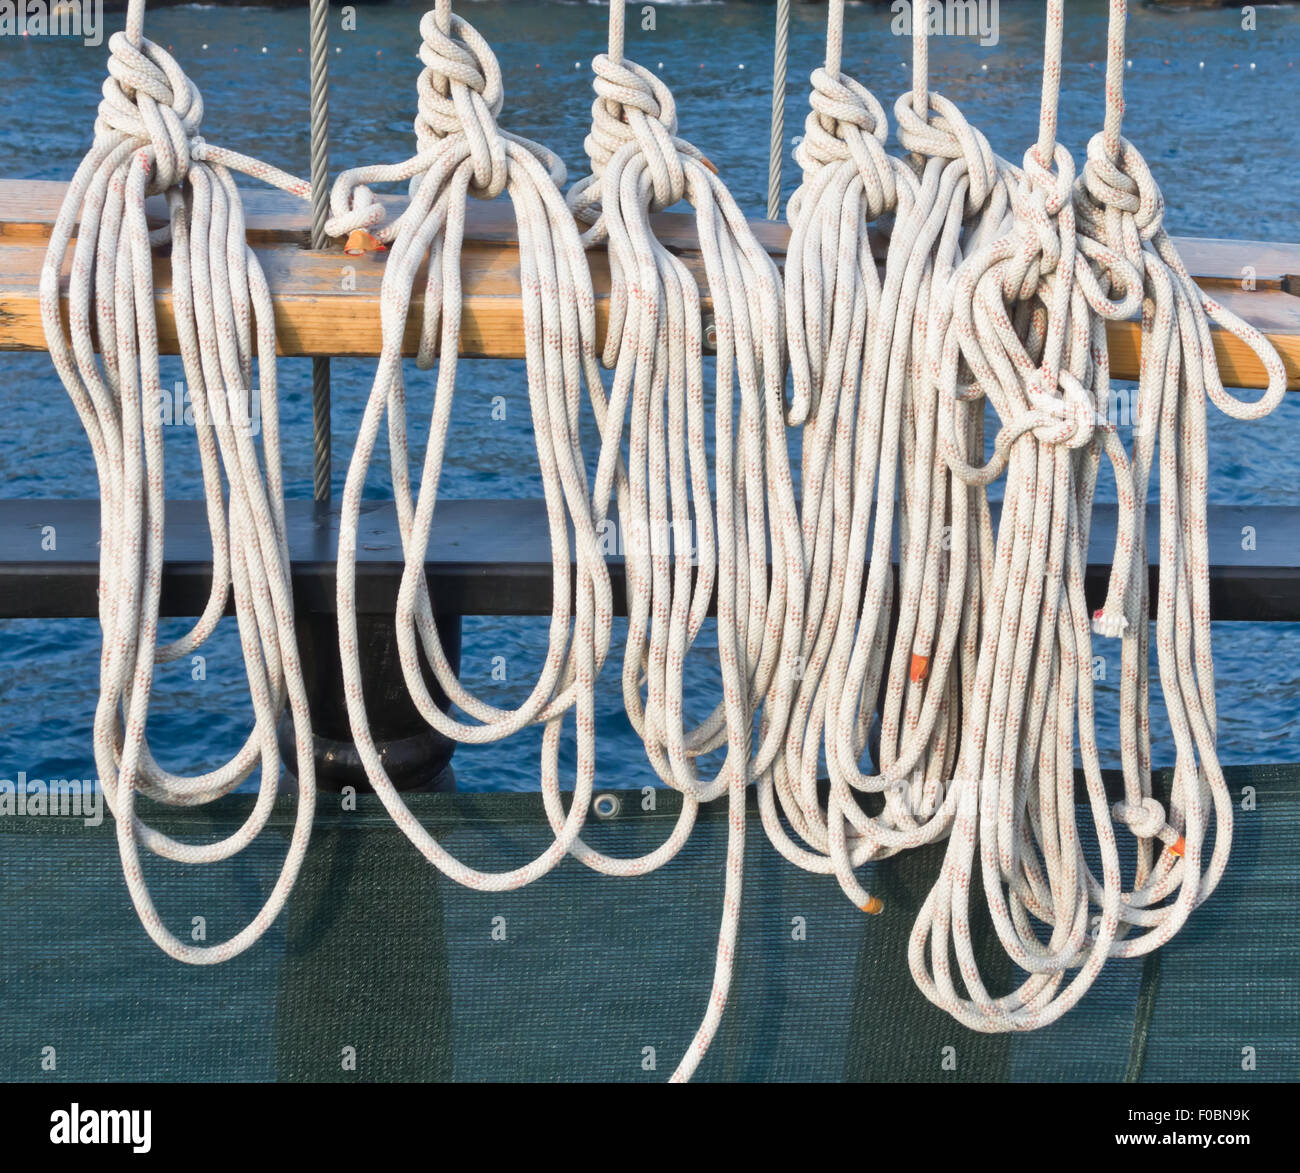 Corde della nave immagini e fotografie stock ad alta risoluzione - Alamy